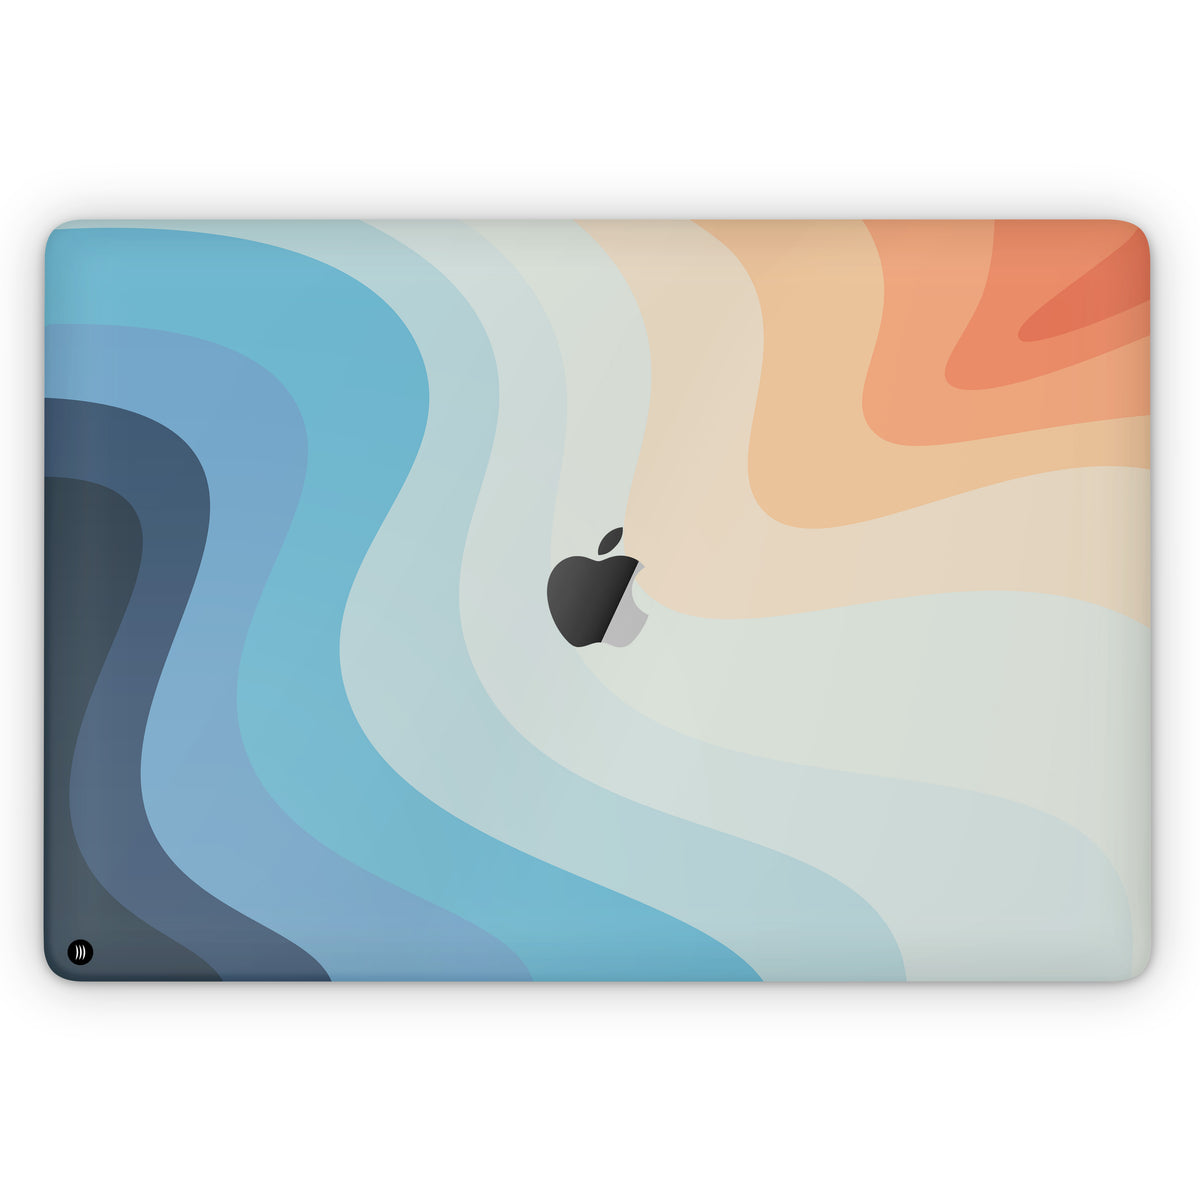 Swell (MacBook Skin)